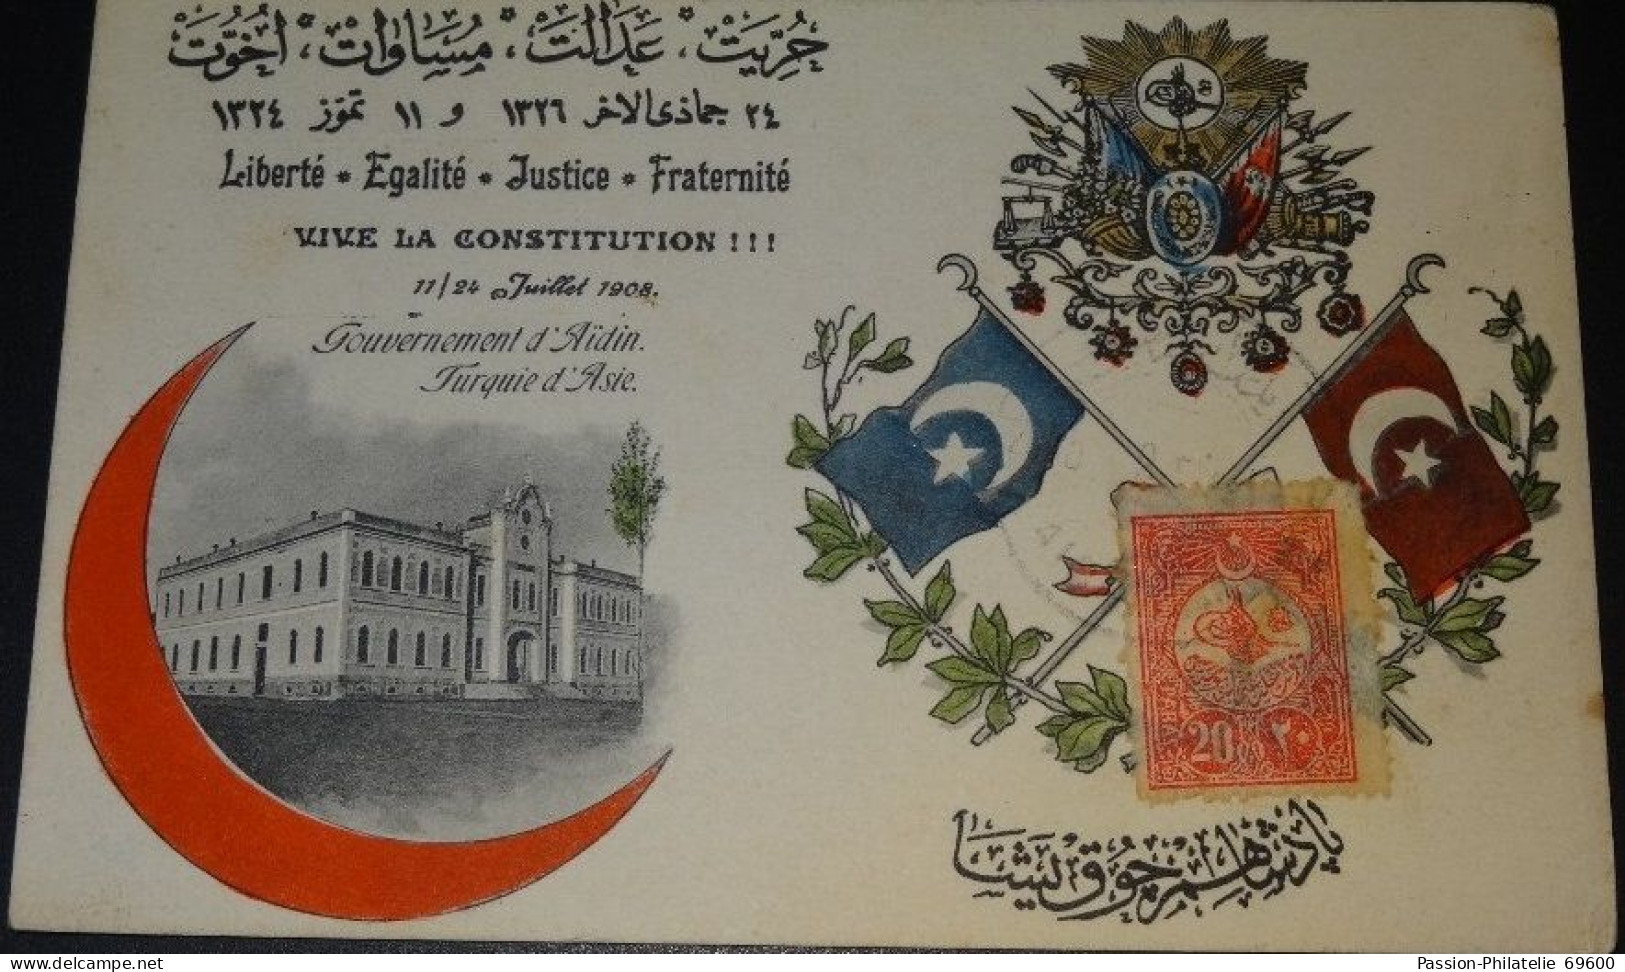 CPA - VIVE LA CONSTITUTION ! - GOUVERNEMENT D'AÏDIN TURQUIE D'ASIE - 1909 - Turquie